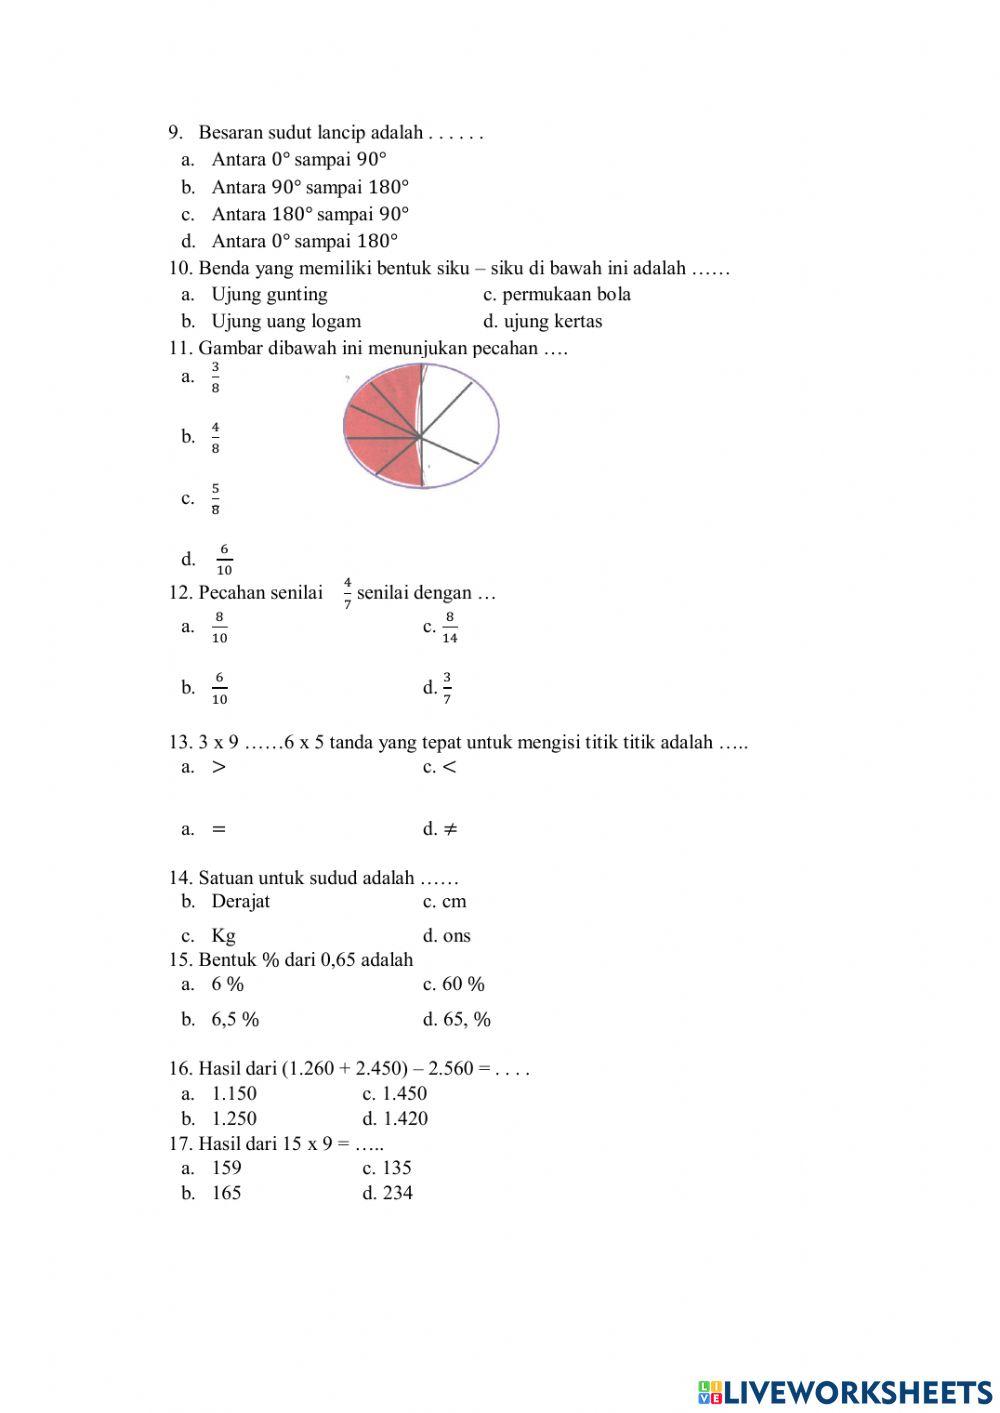 Soal Matematika kelas 4